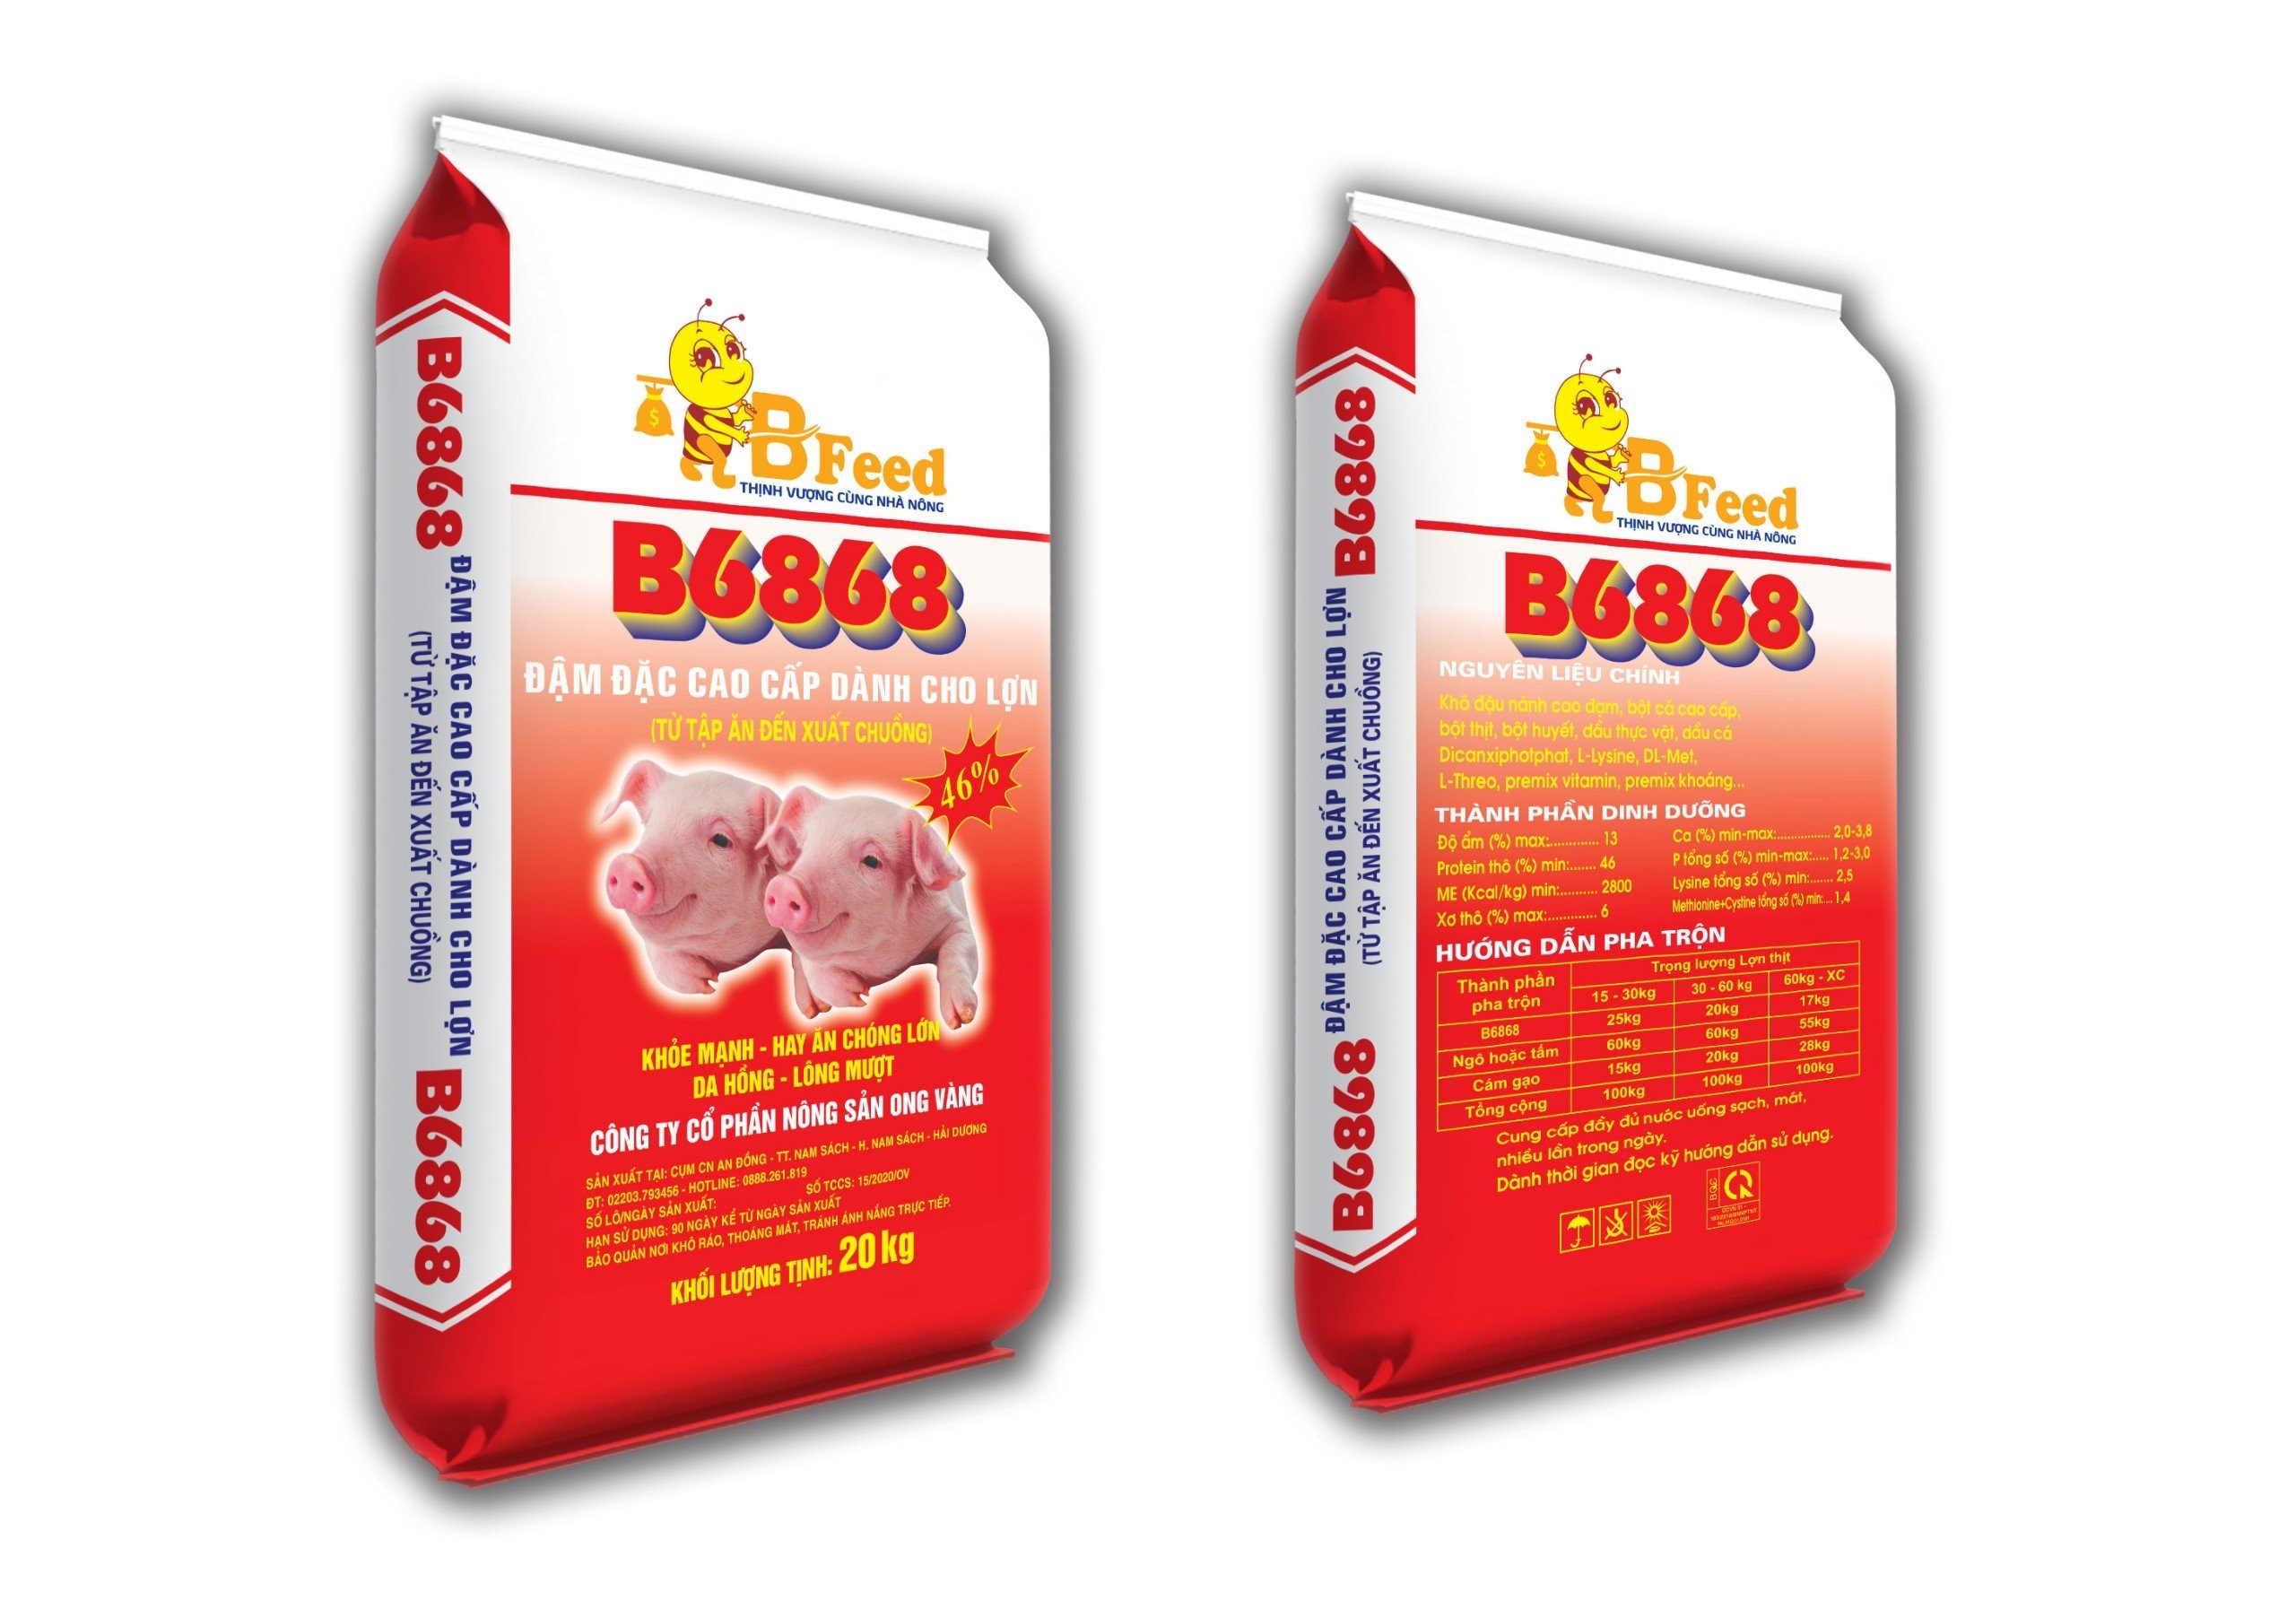 B6868 - Thức ăn đậm đặc cao cấp dành cho lợn (Từ tập ăn đến xuất chuồng)